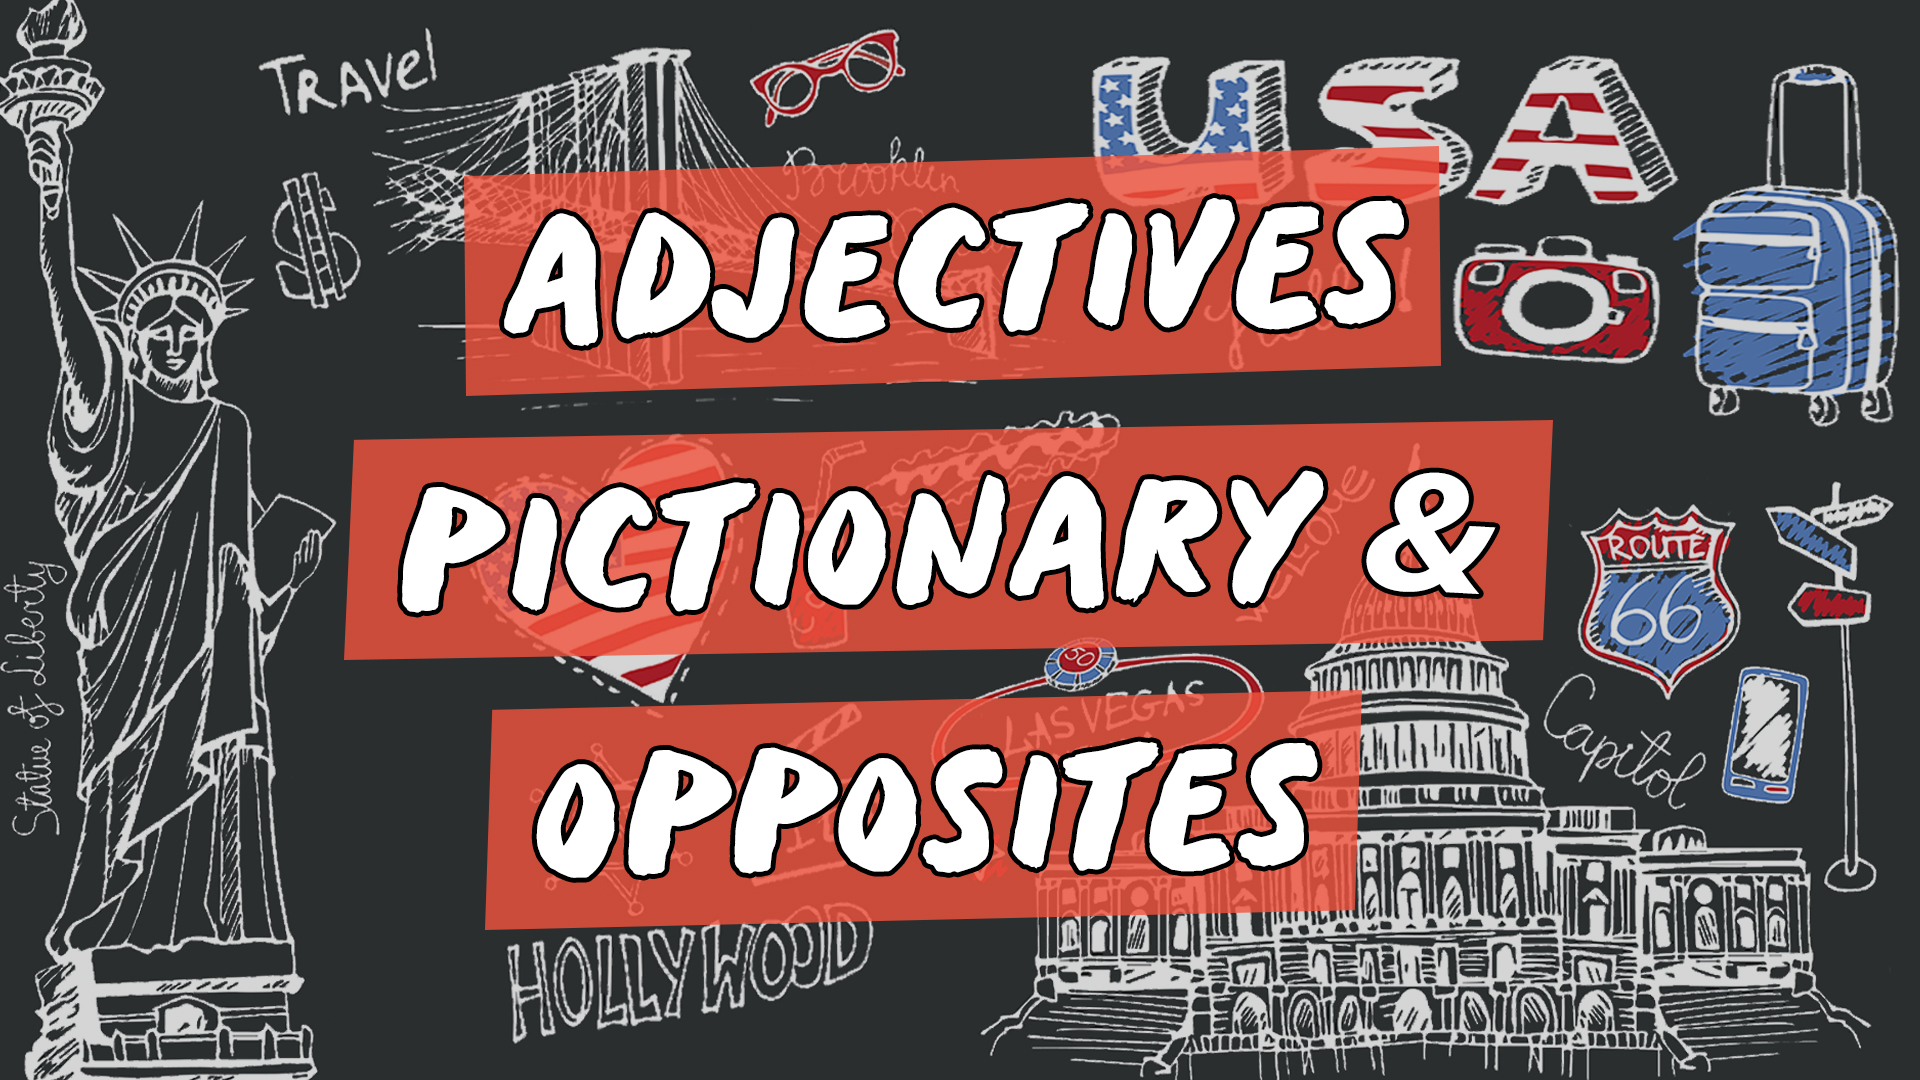 "Adjectives pictionary & opposites" escrito sobre ilustração de ícones que representam os Estados Unidos